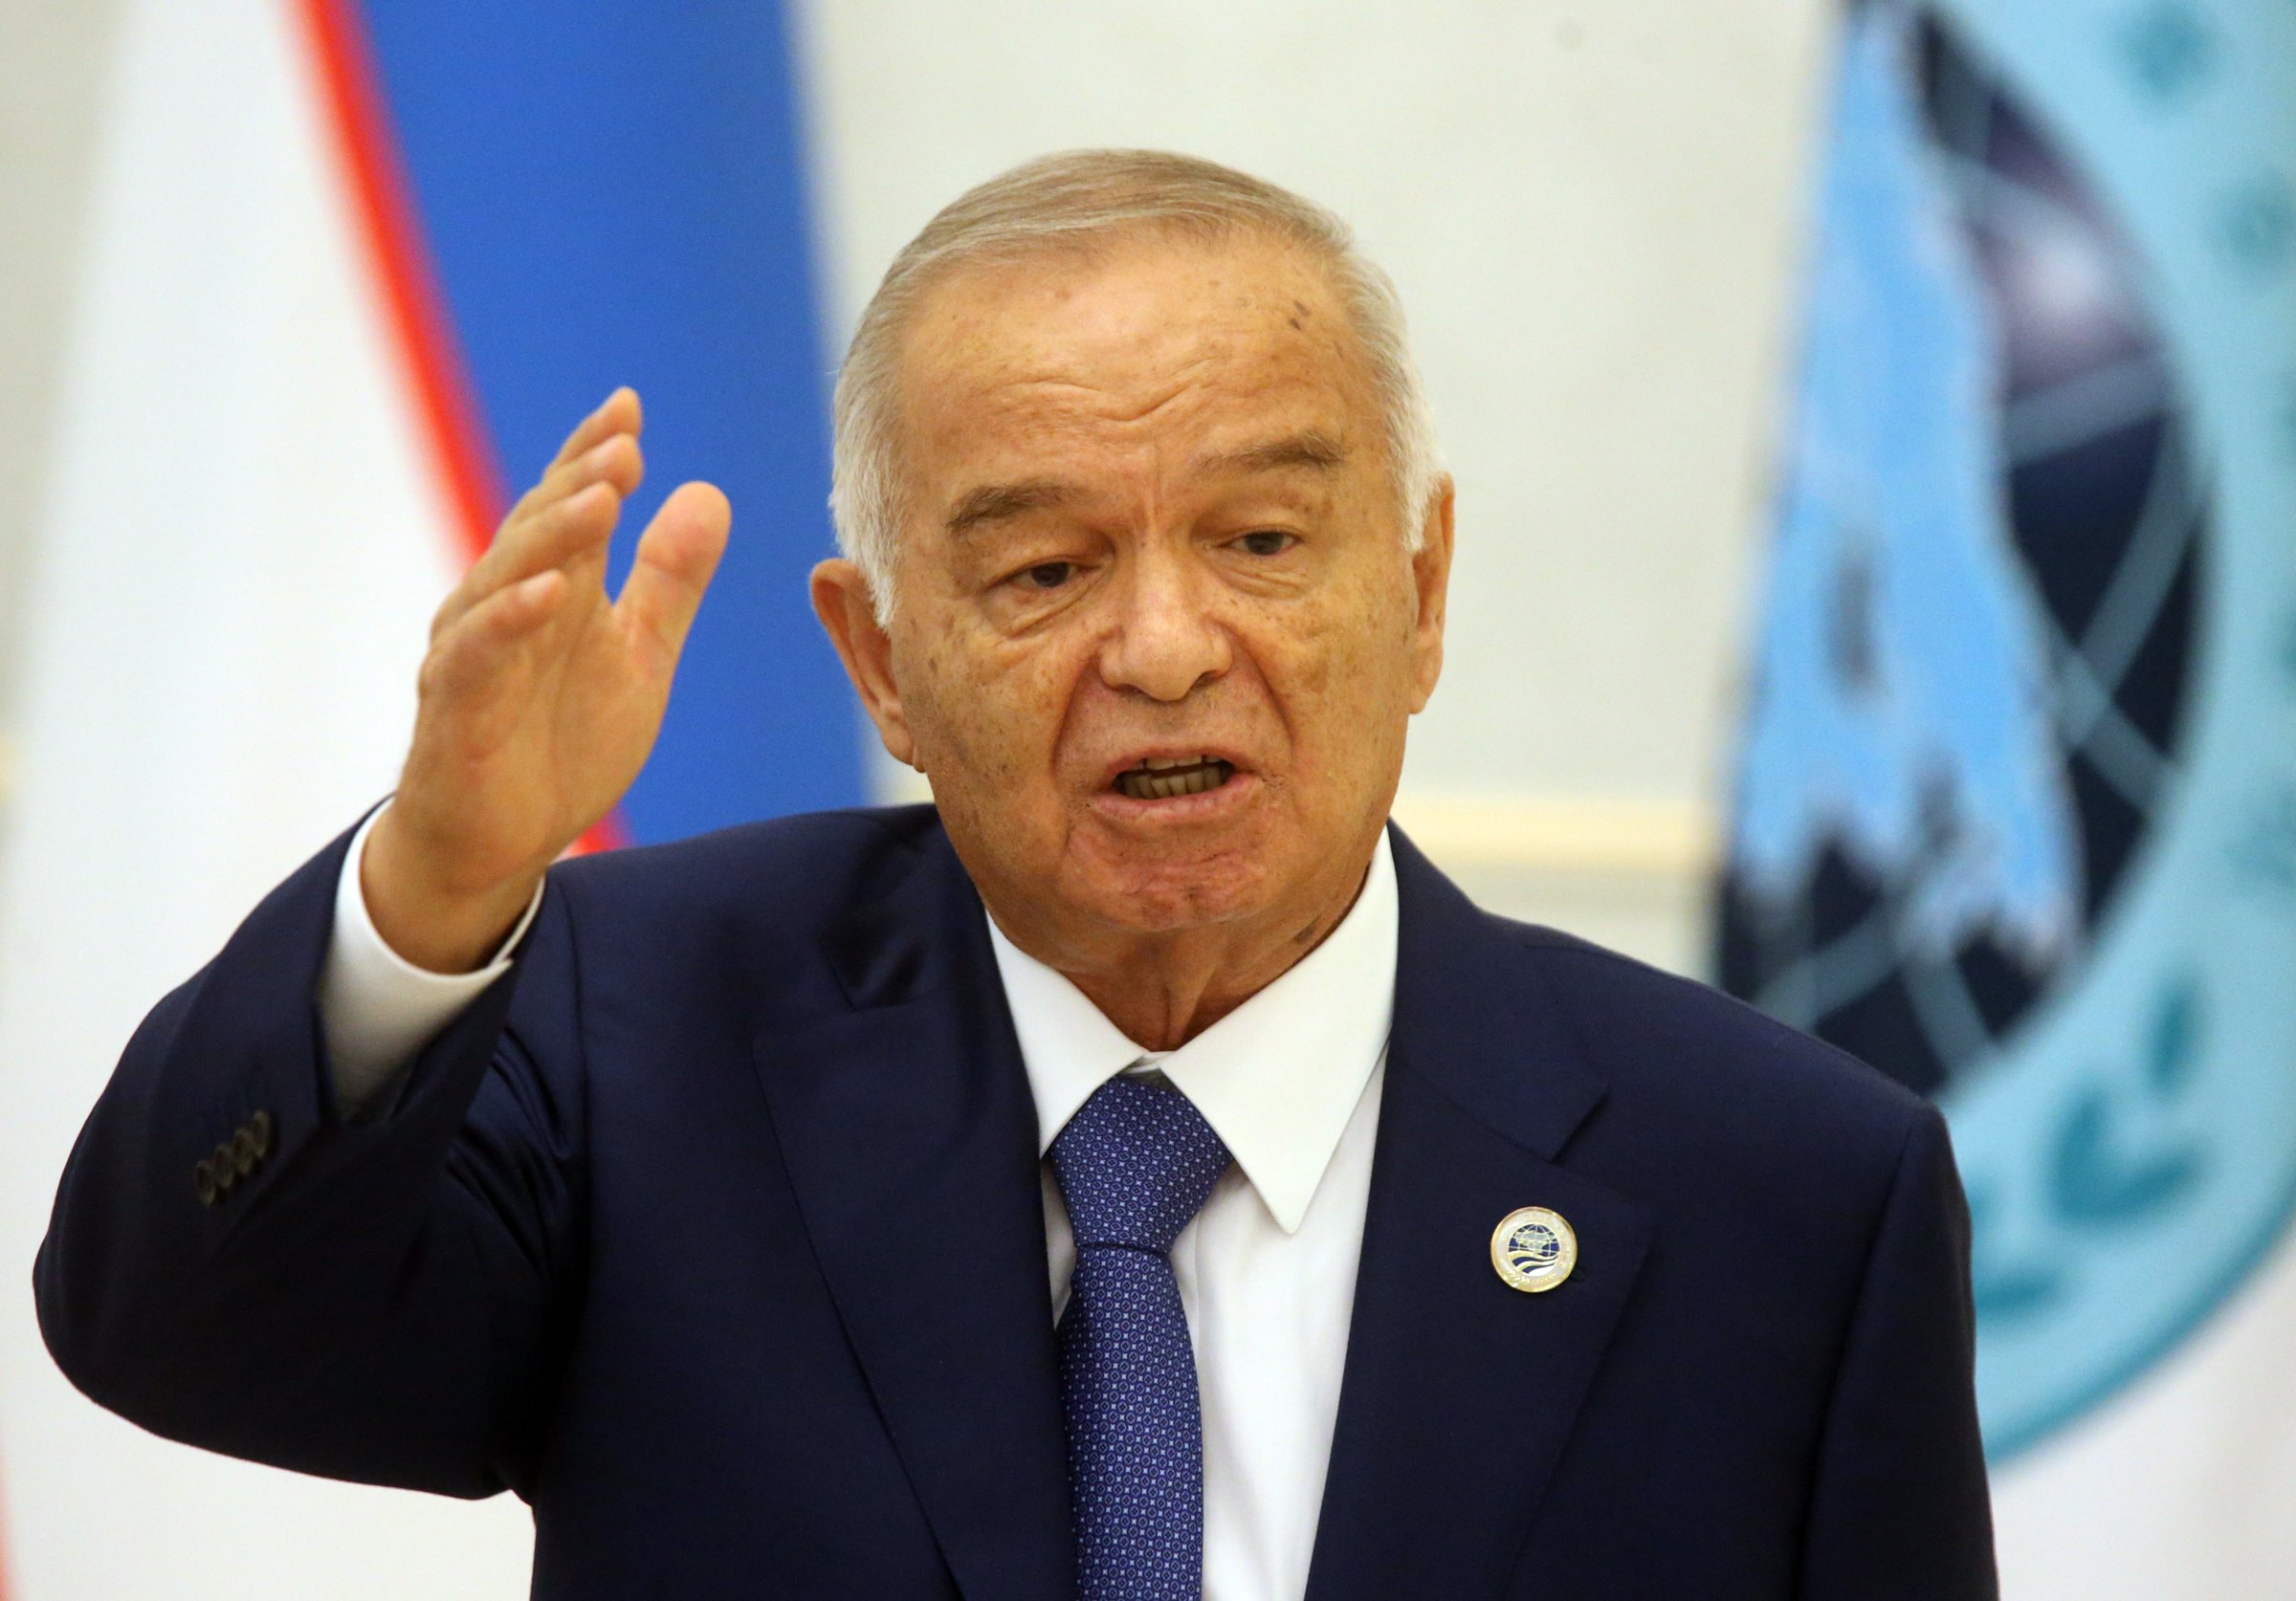 Uzbek President Islam Karimov speaks during the Shanghai Cooperation Organisation (SCO) Summit in Tashkent, Uzbekistan, on June 24, 2016